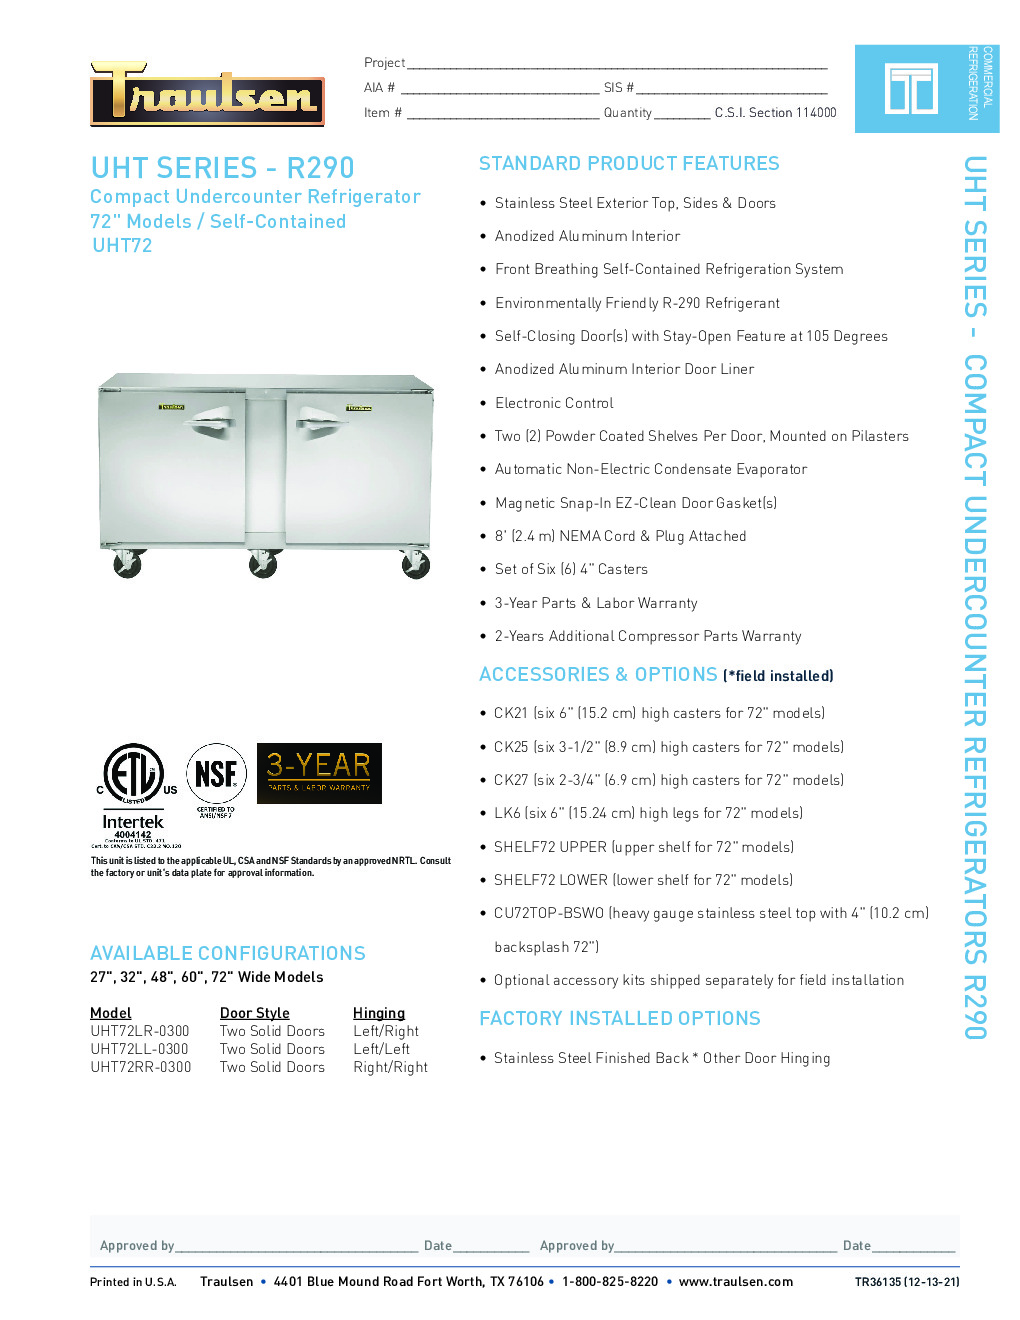 Traulsen UHT72LL-0300 Reach-In Undercounter Refrigerator